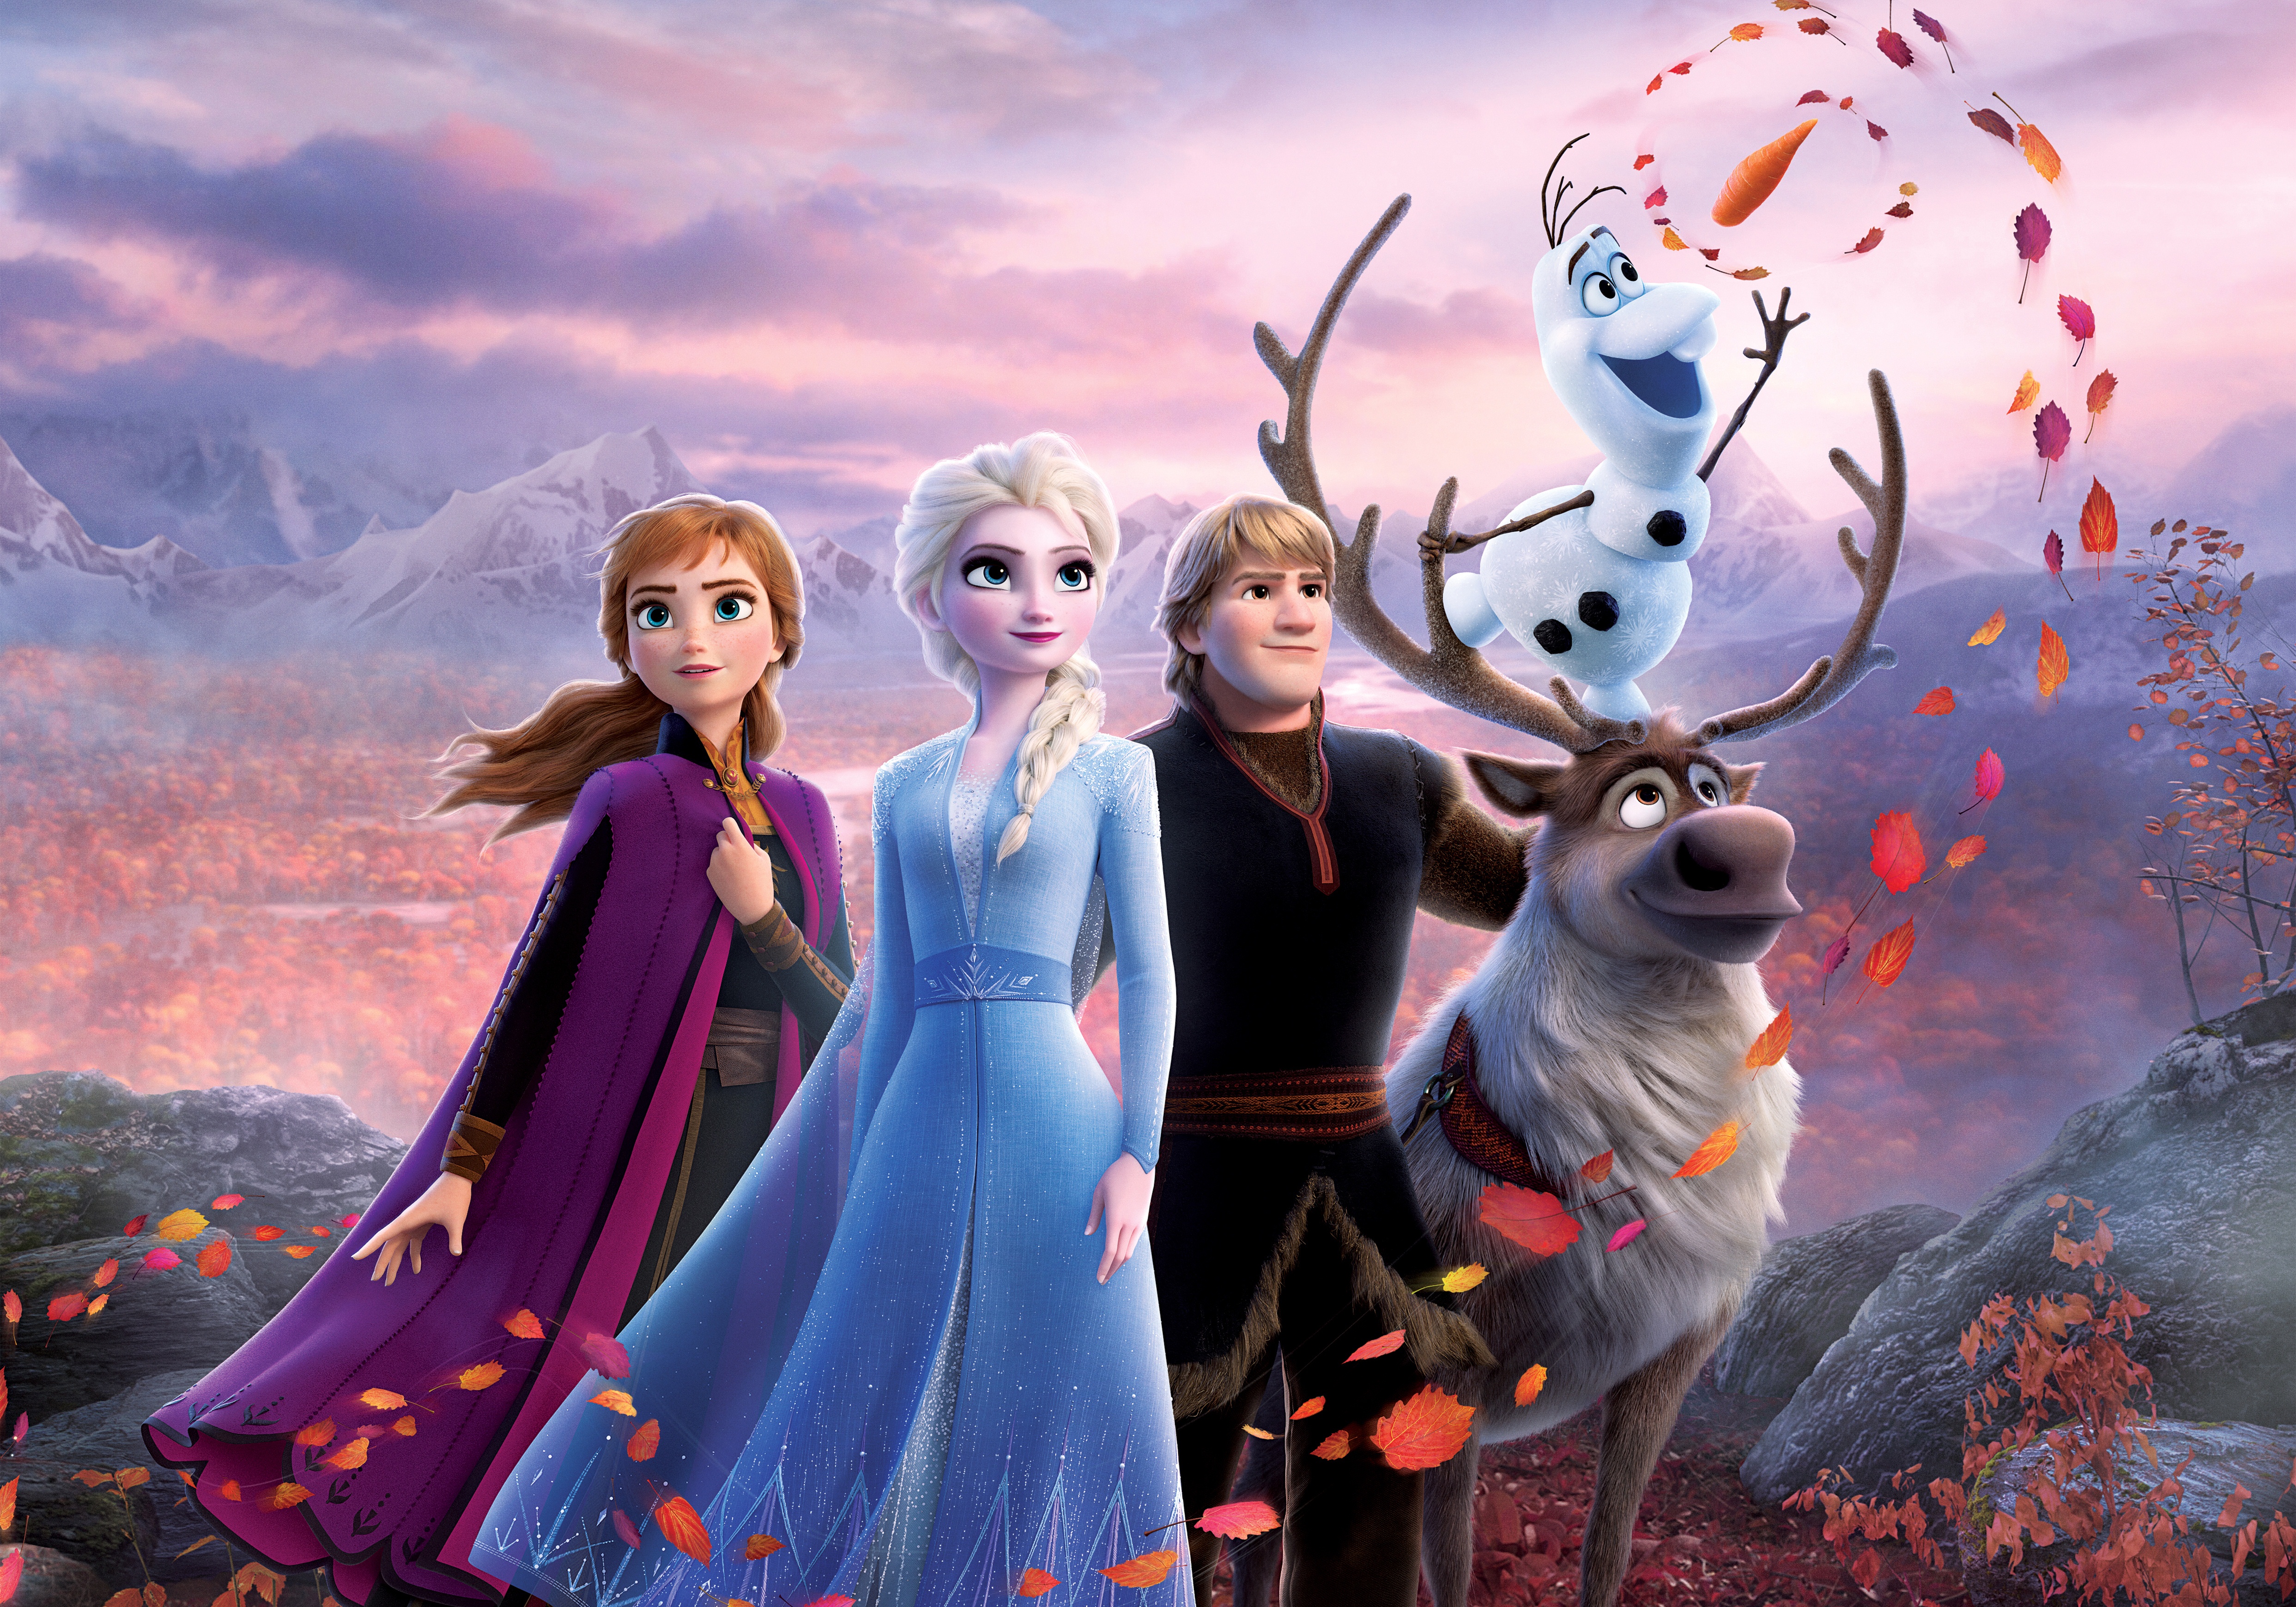 Frozen Cartoon Characters 2 in the Forest Desktop wallpapers 1400x1050